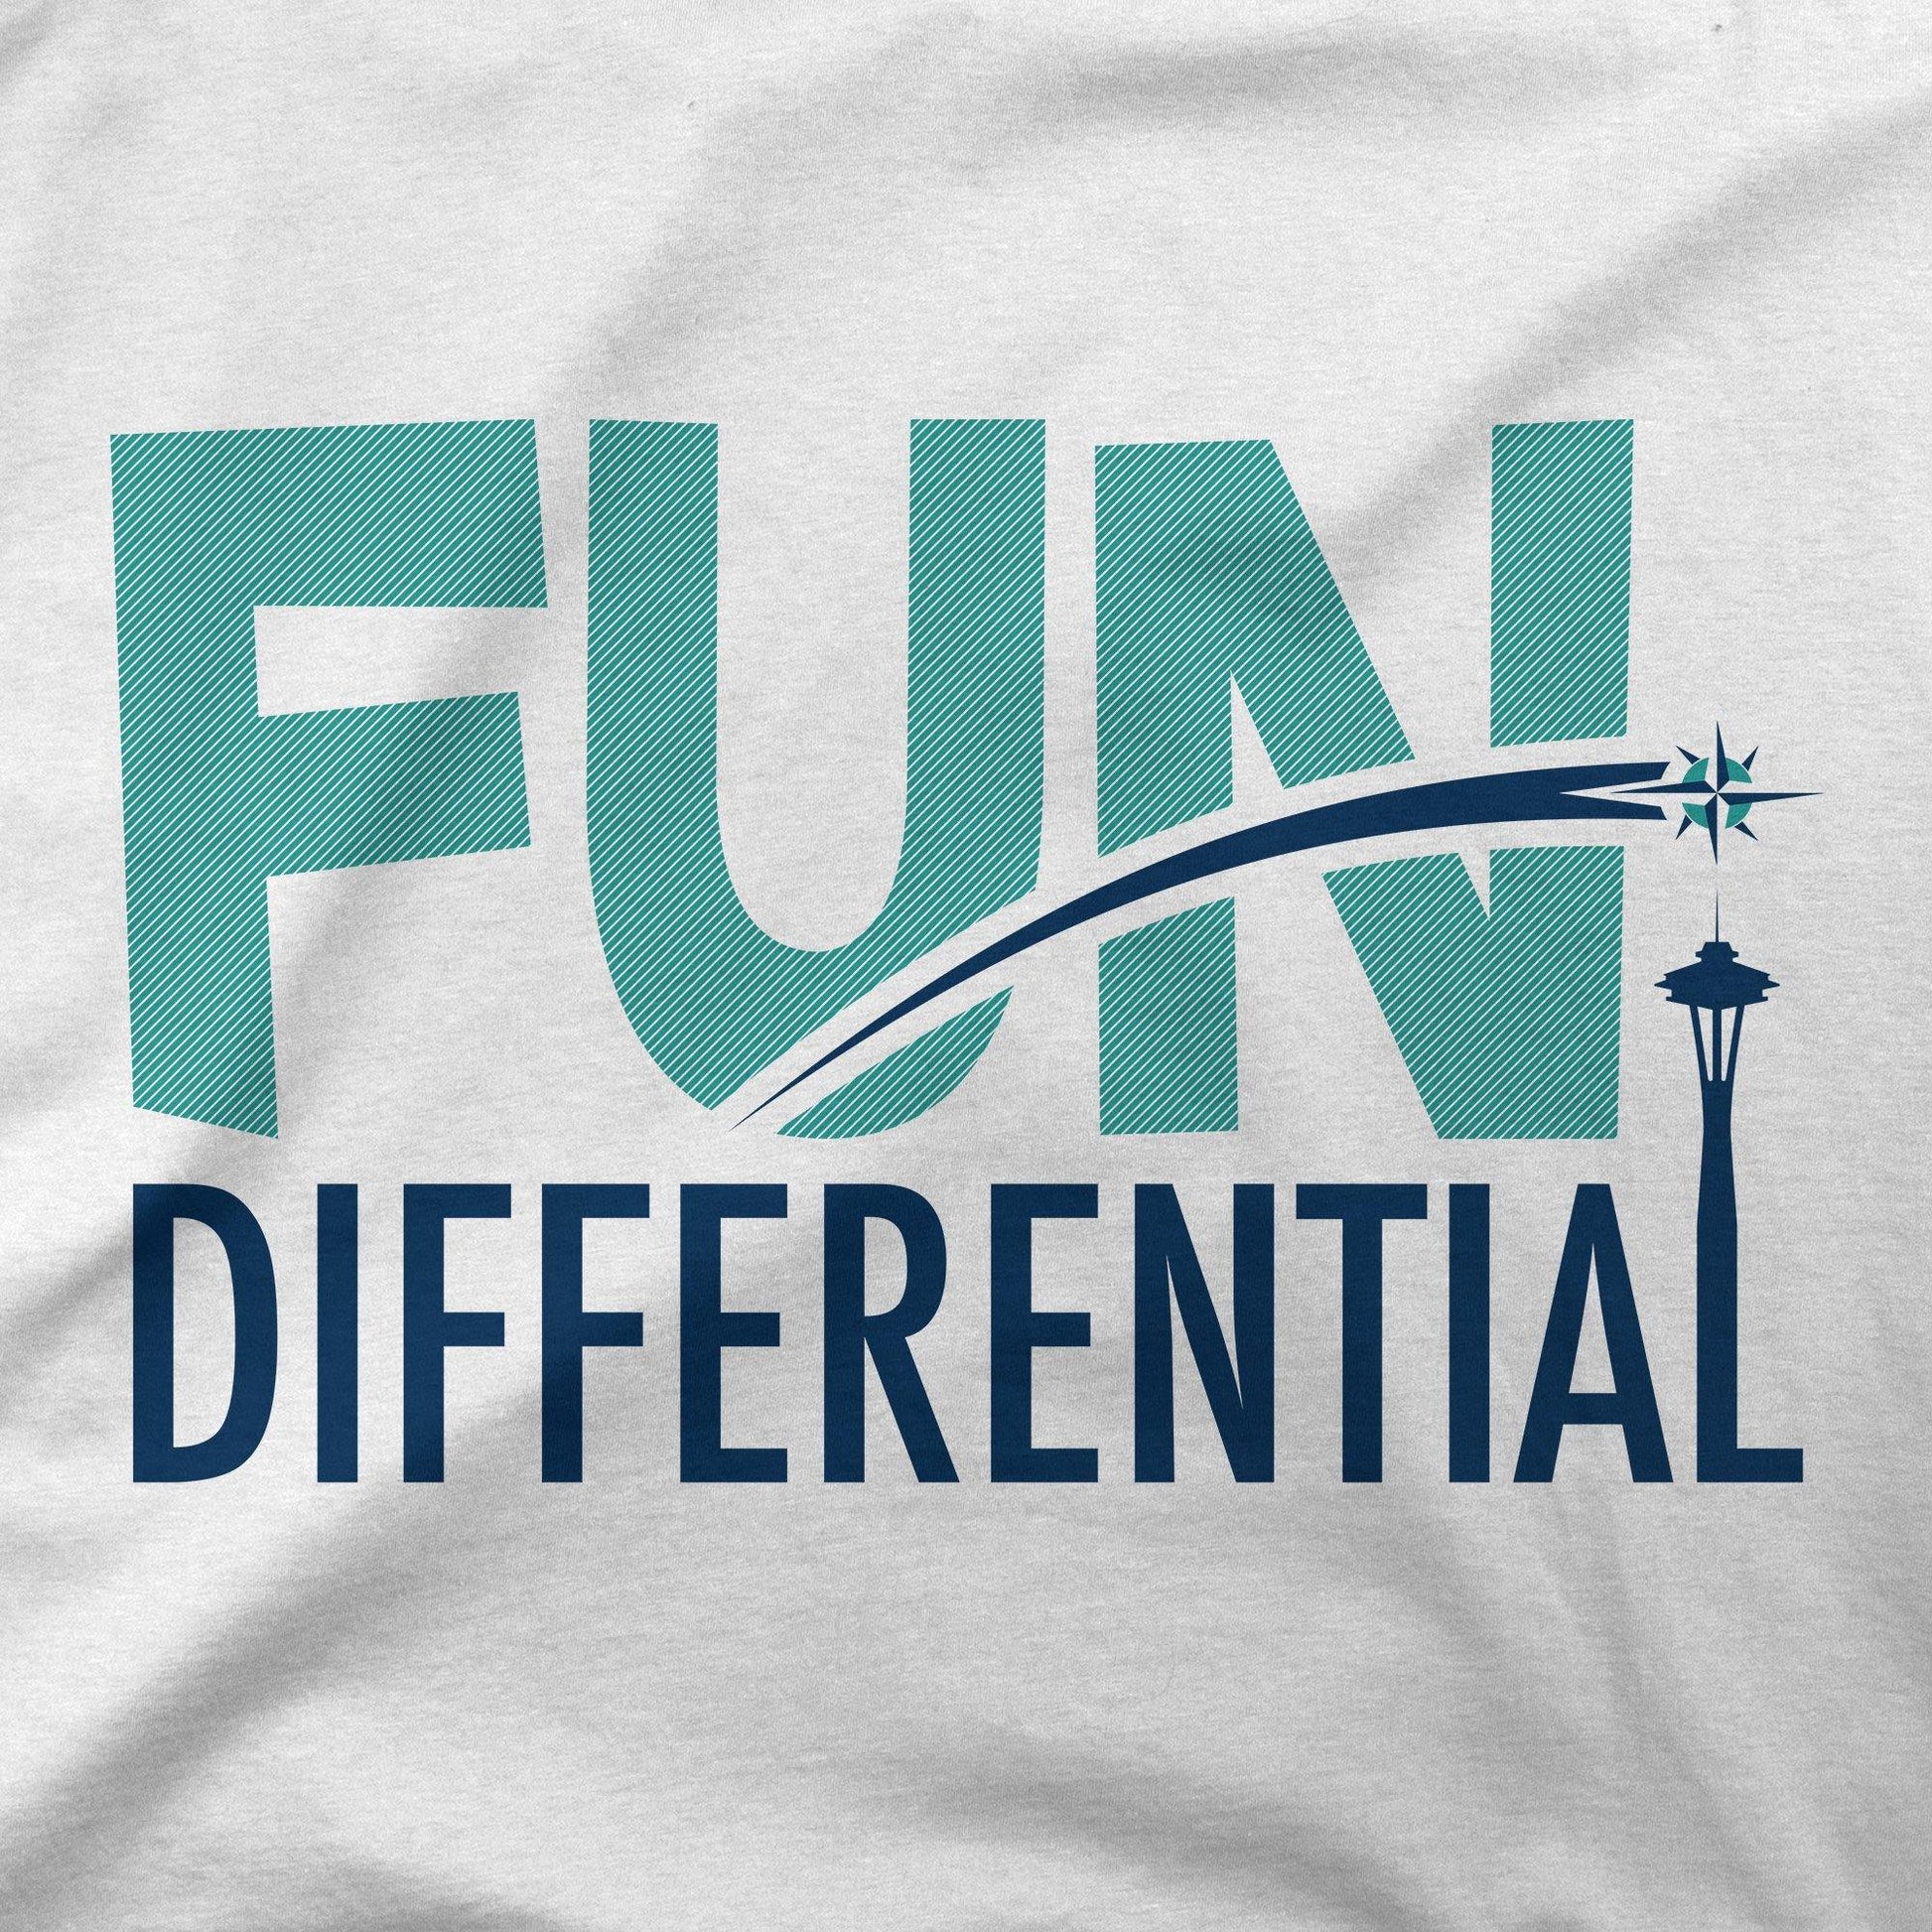 Fun Differential | T-Shirt - Jomboy Media